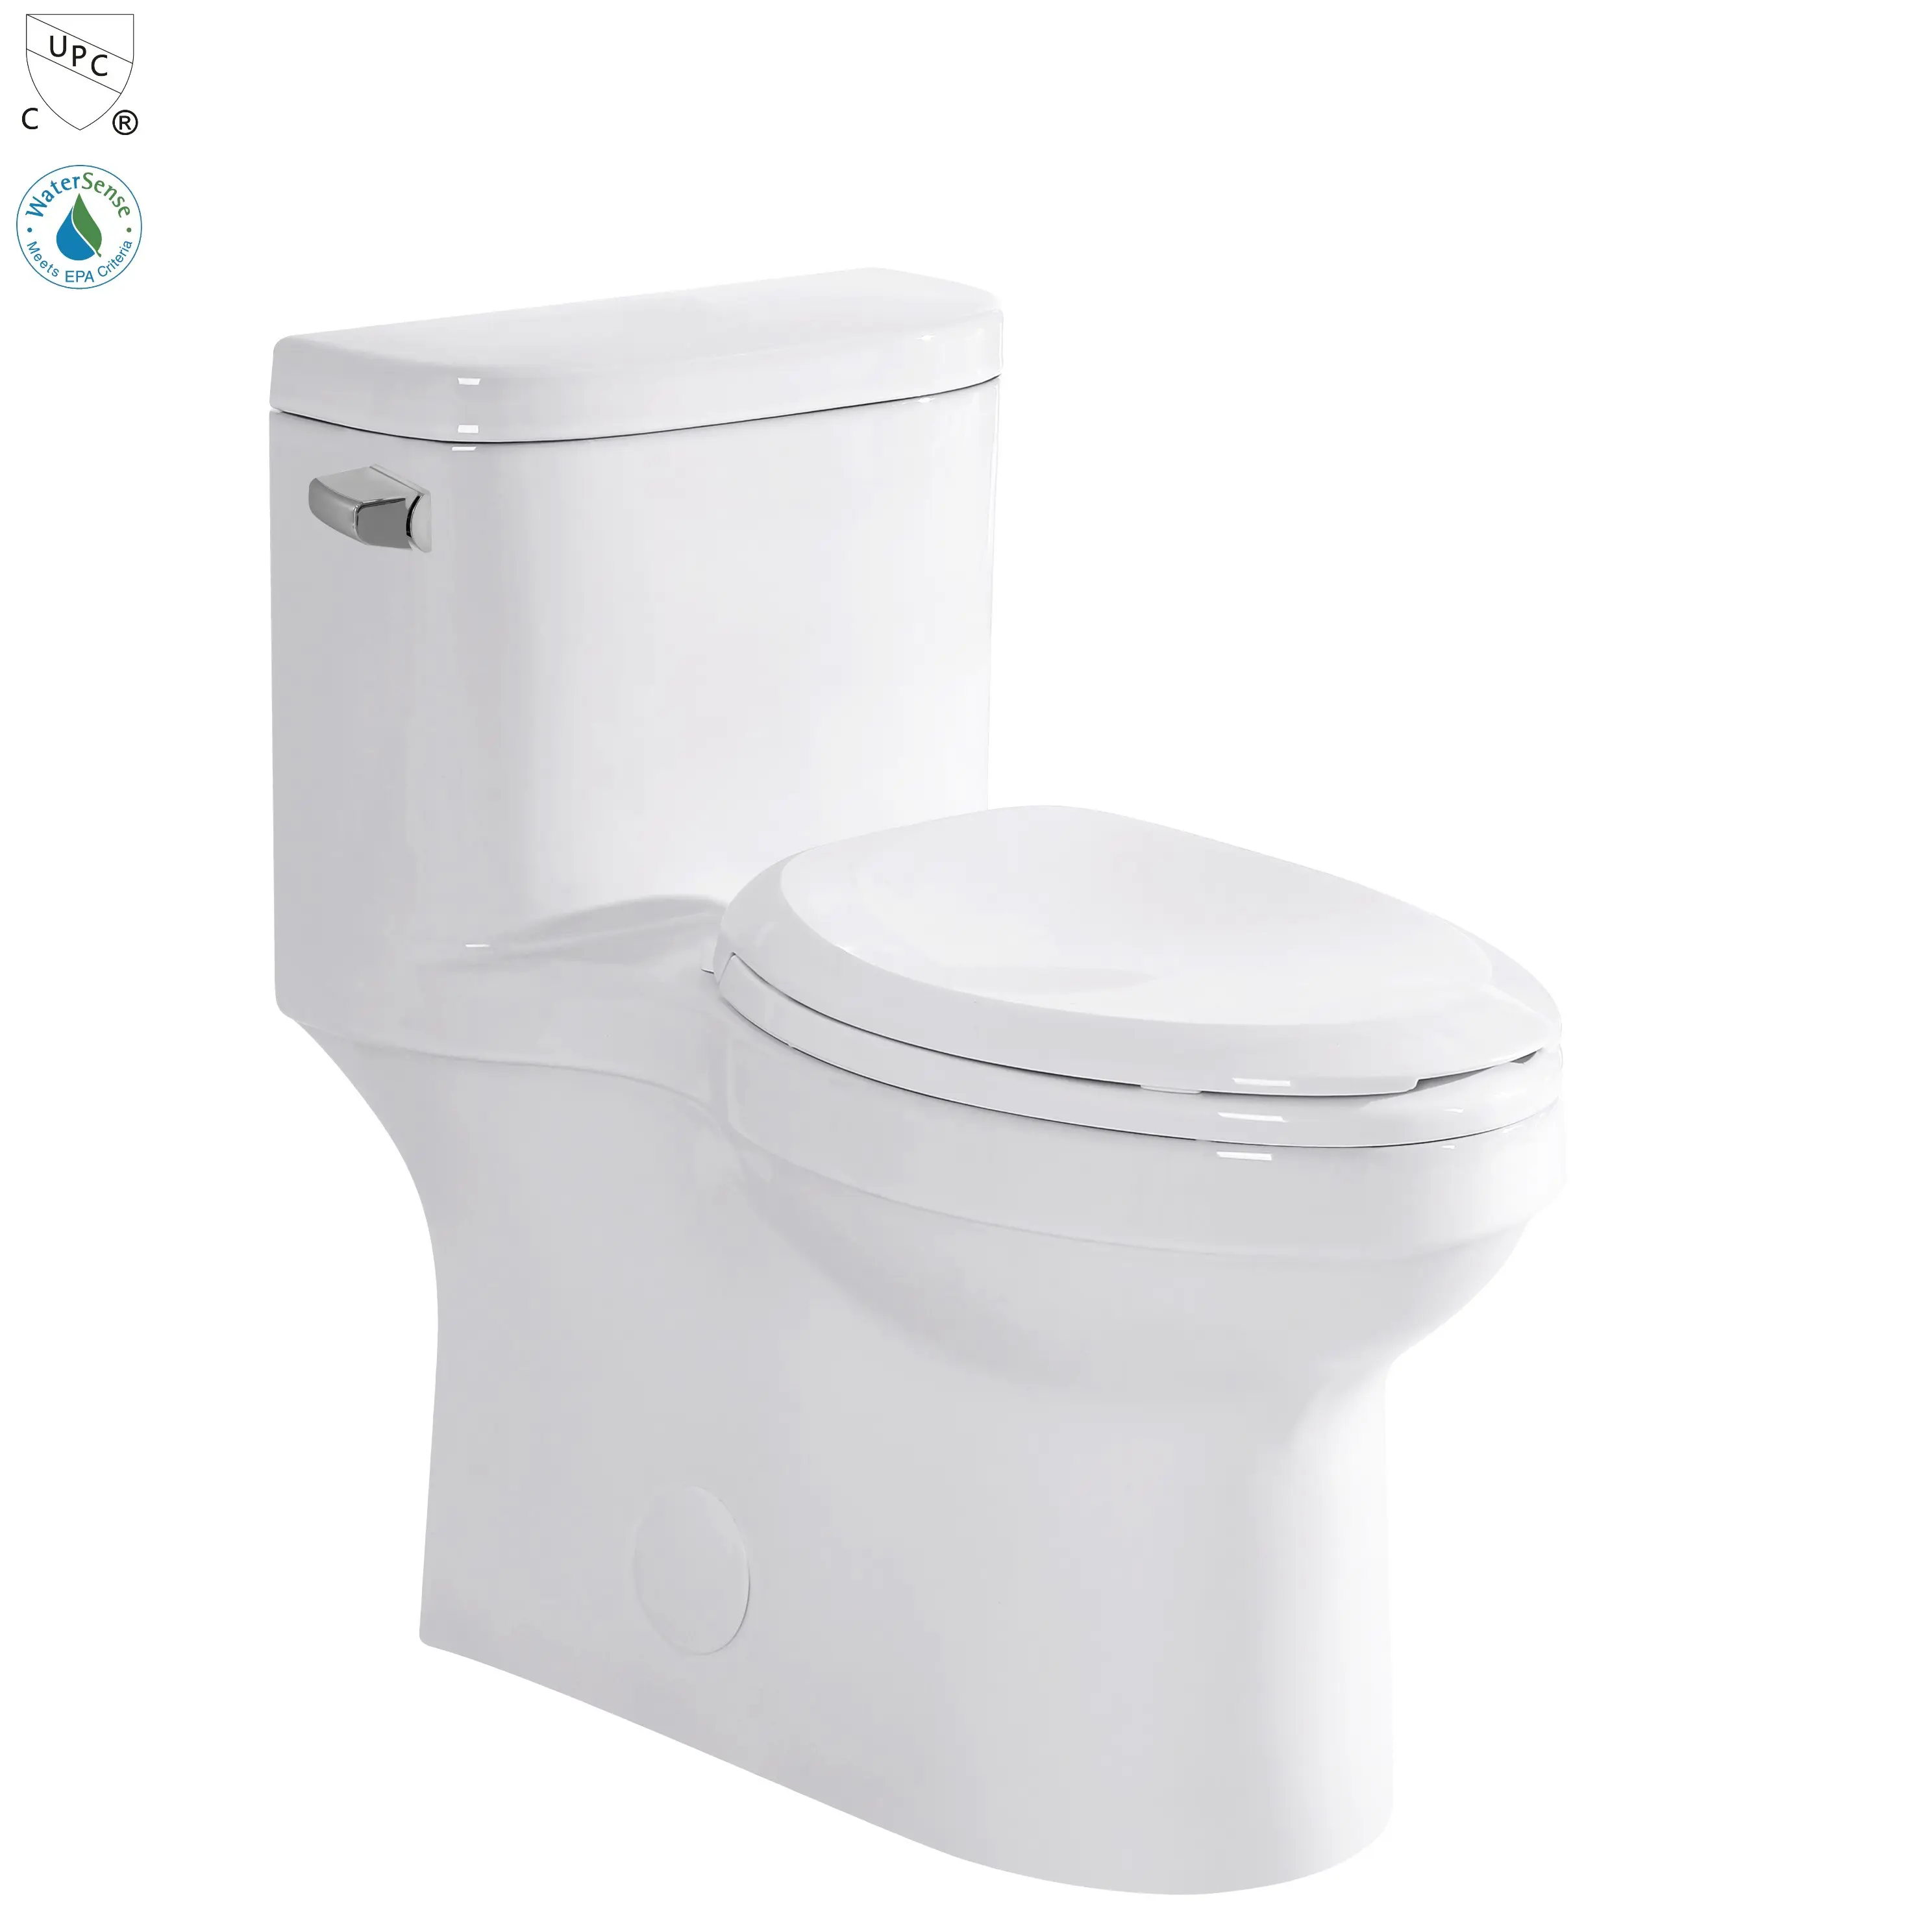 Neues Produkt Top-Qualität billig s Falle wc Siphon Spülen einteilige Wasser klosett Waschraum CUPC weiß Keramik Pisse wc Toiletten schüssel